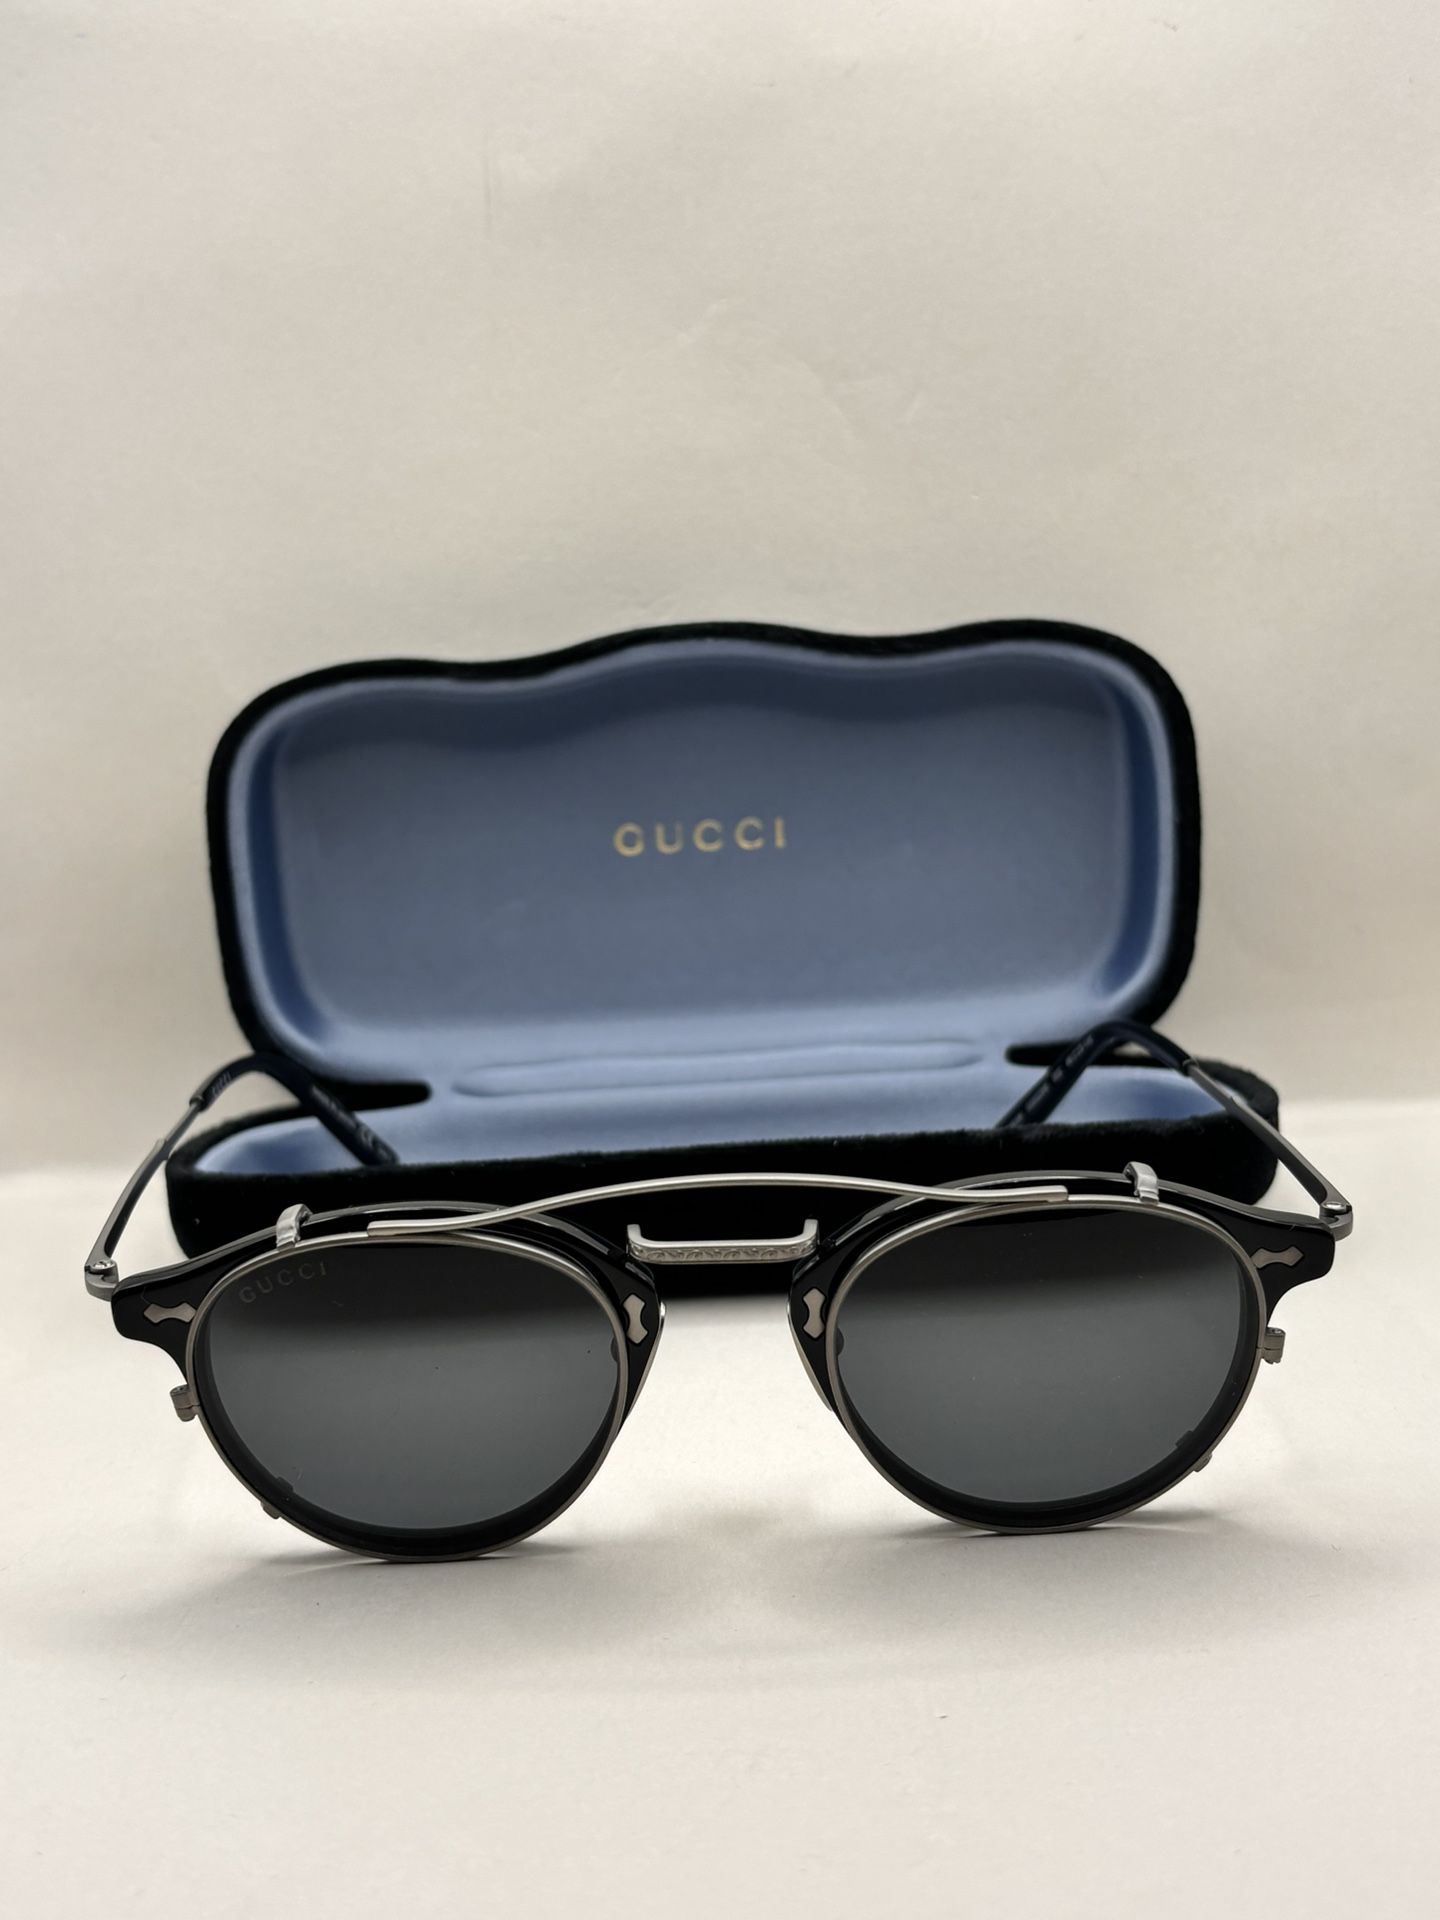 GUCCI AUTHENTIC 0229 Black Ruthenium Clip On Titanium Sunglasses GG0229S 002